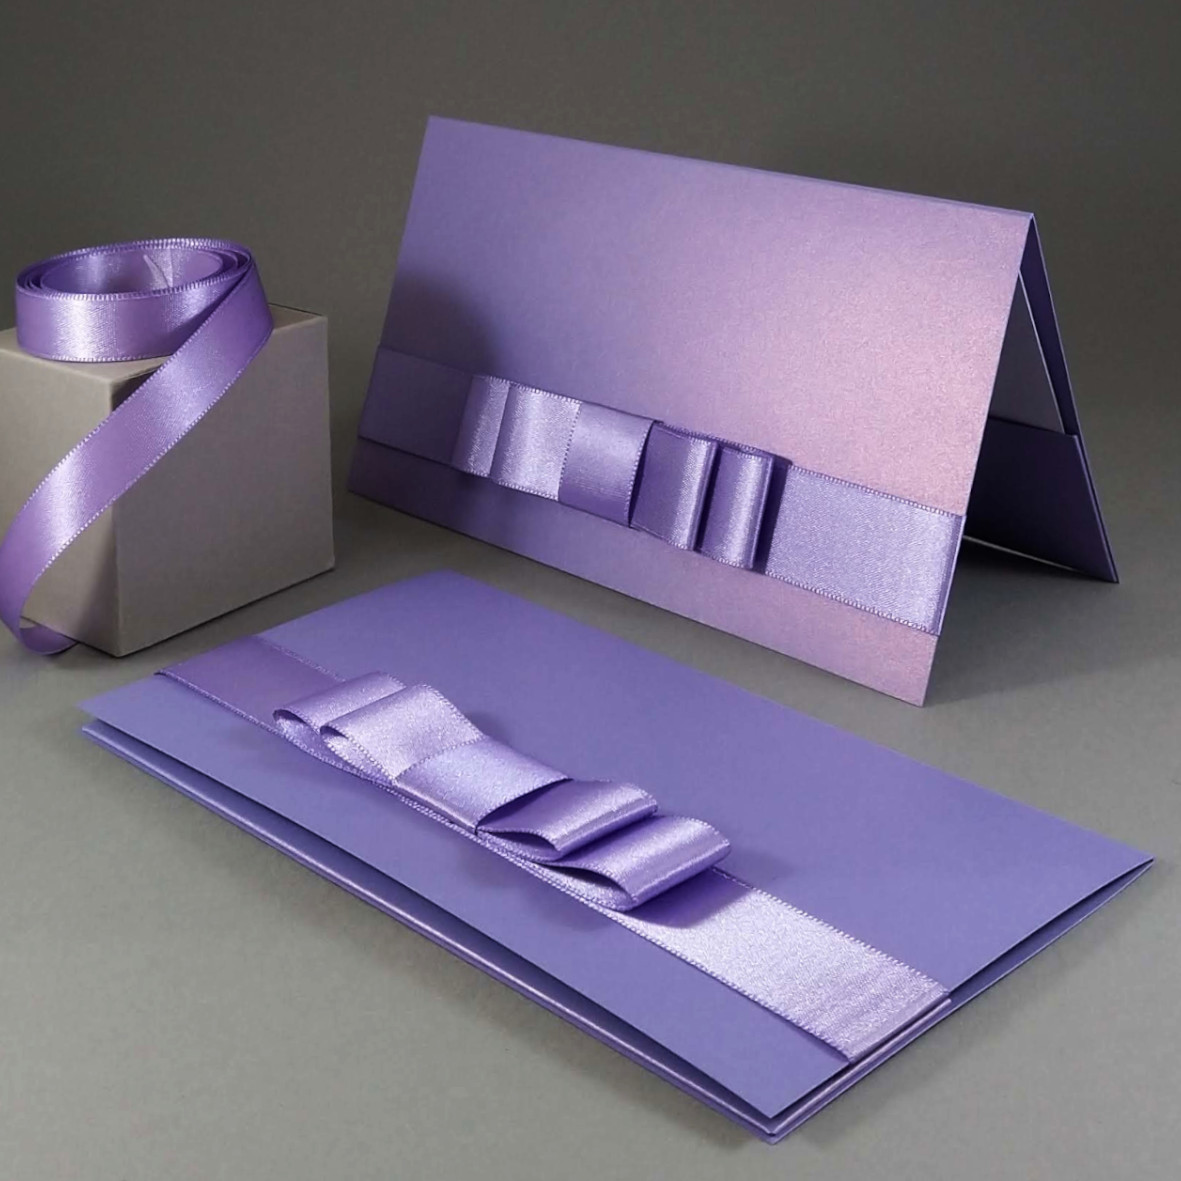 Dárková kapsa DL formátu z perleťového (metalického) papíru, s aplikací z široké atlasové stuhy, vše v fialové barvě, celkový rozměr 206 × 106 mm.